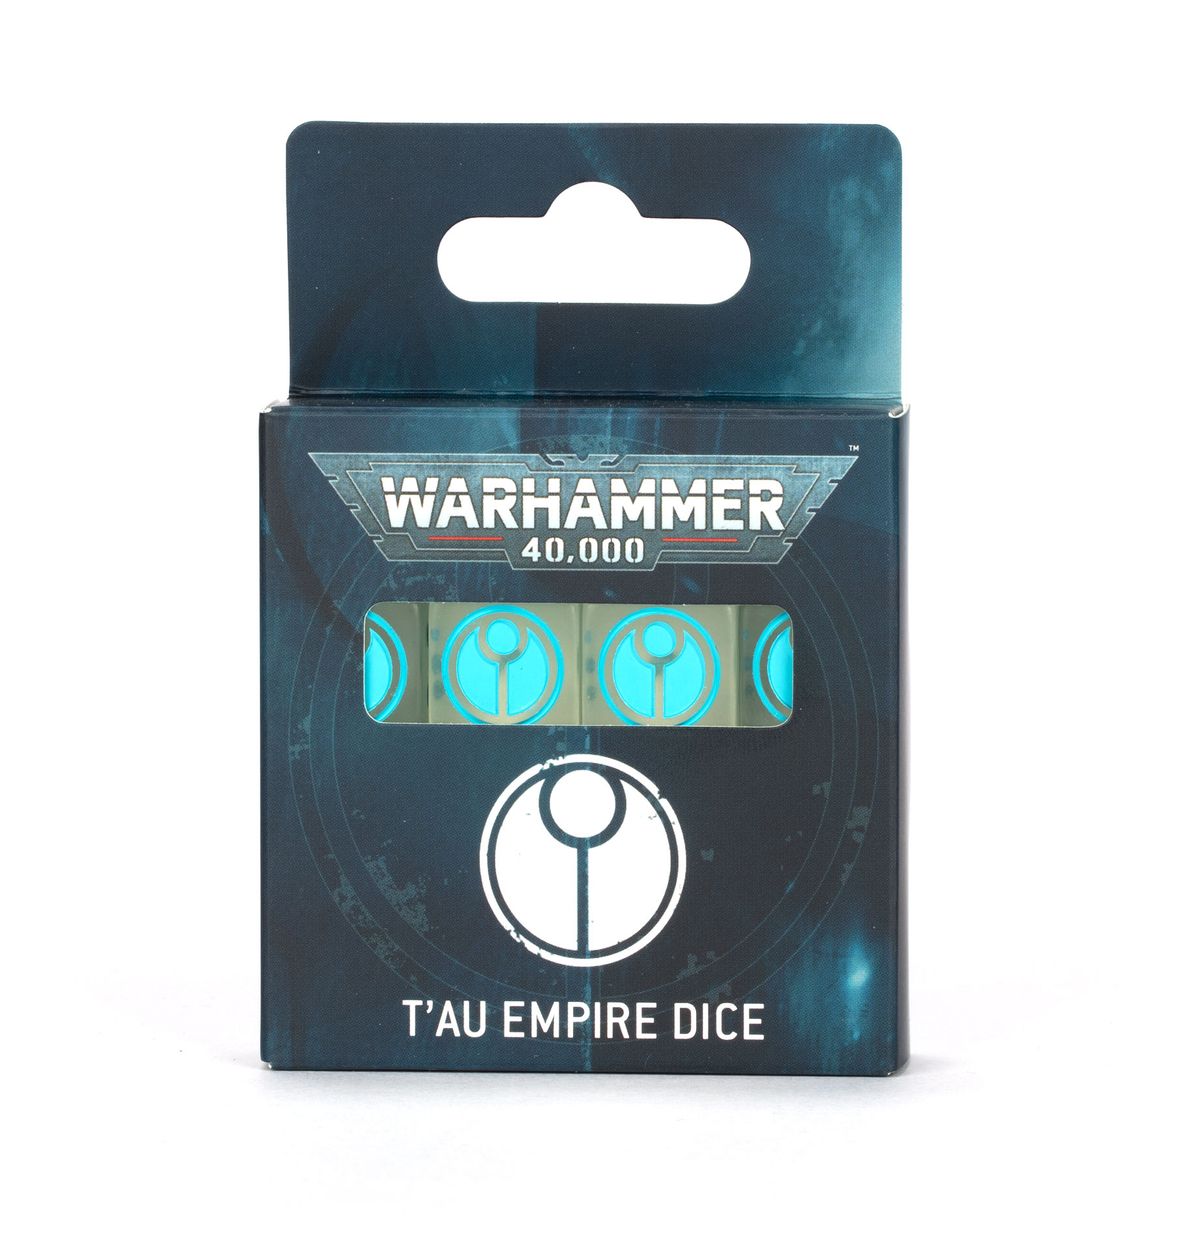 Warhammer 40,000 T'au Empire Dice MKID35G2VA |63717|